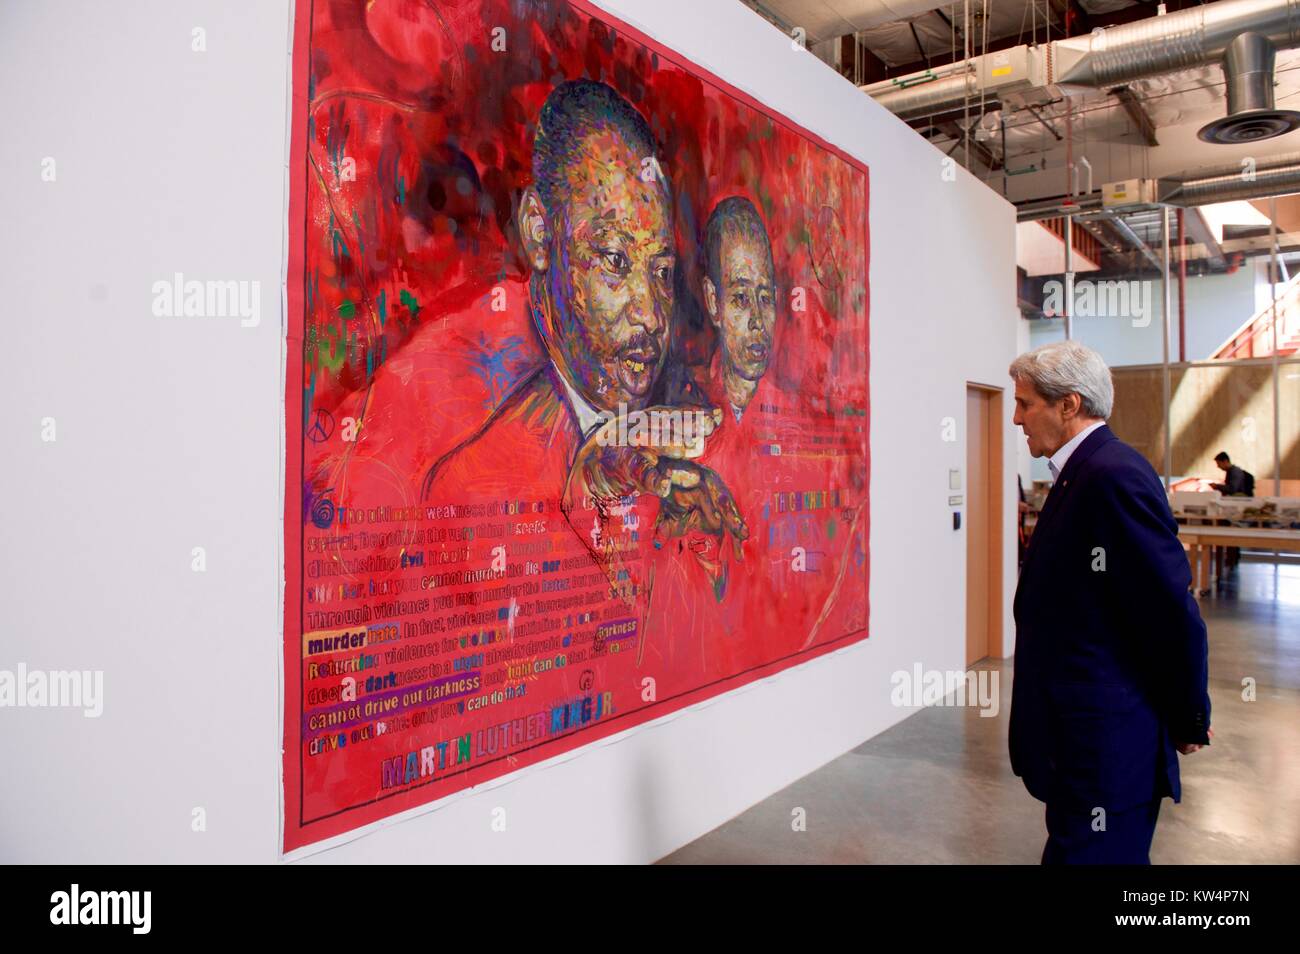 Il Segretario di Stato americano John Kerry la visualizzazione di una pittura di Martin Luther King Jr. presso la sede centrale di Facebook, Menlo Park, California, 23 giugno 2016. Immagine cortesia Dipartimento di Stato degli Stati Uniti. Foto Stock